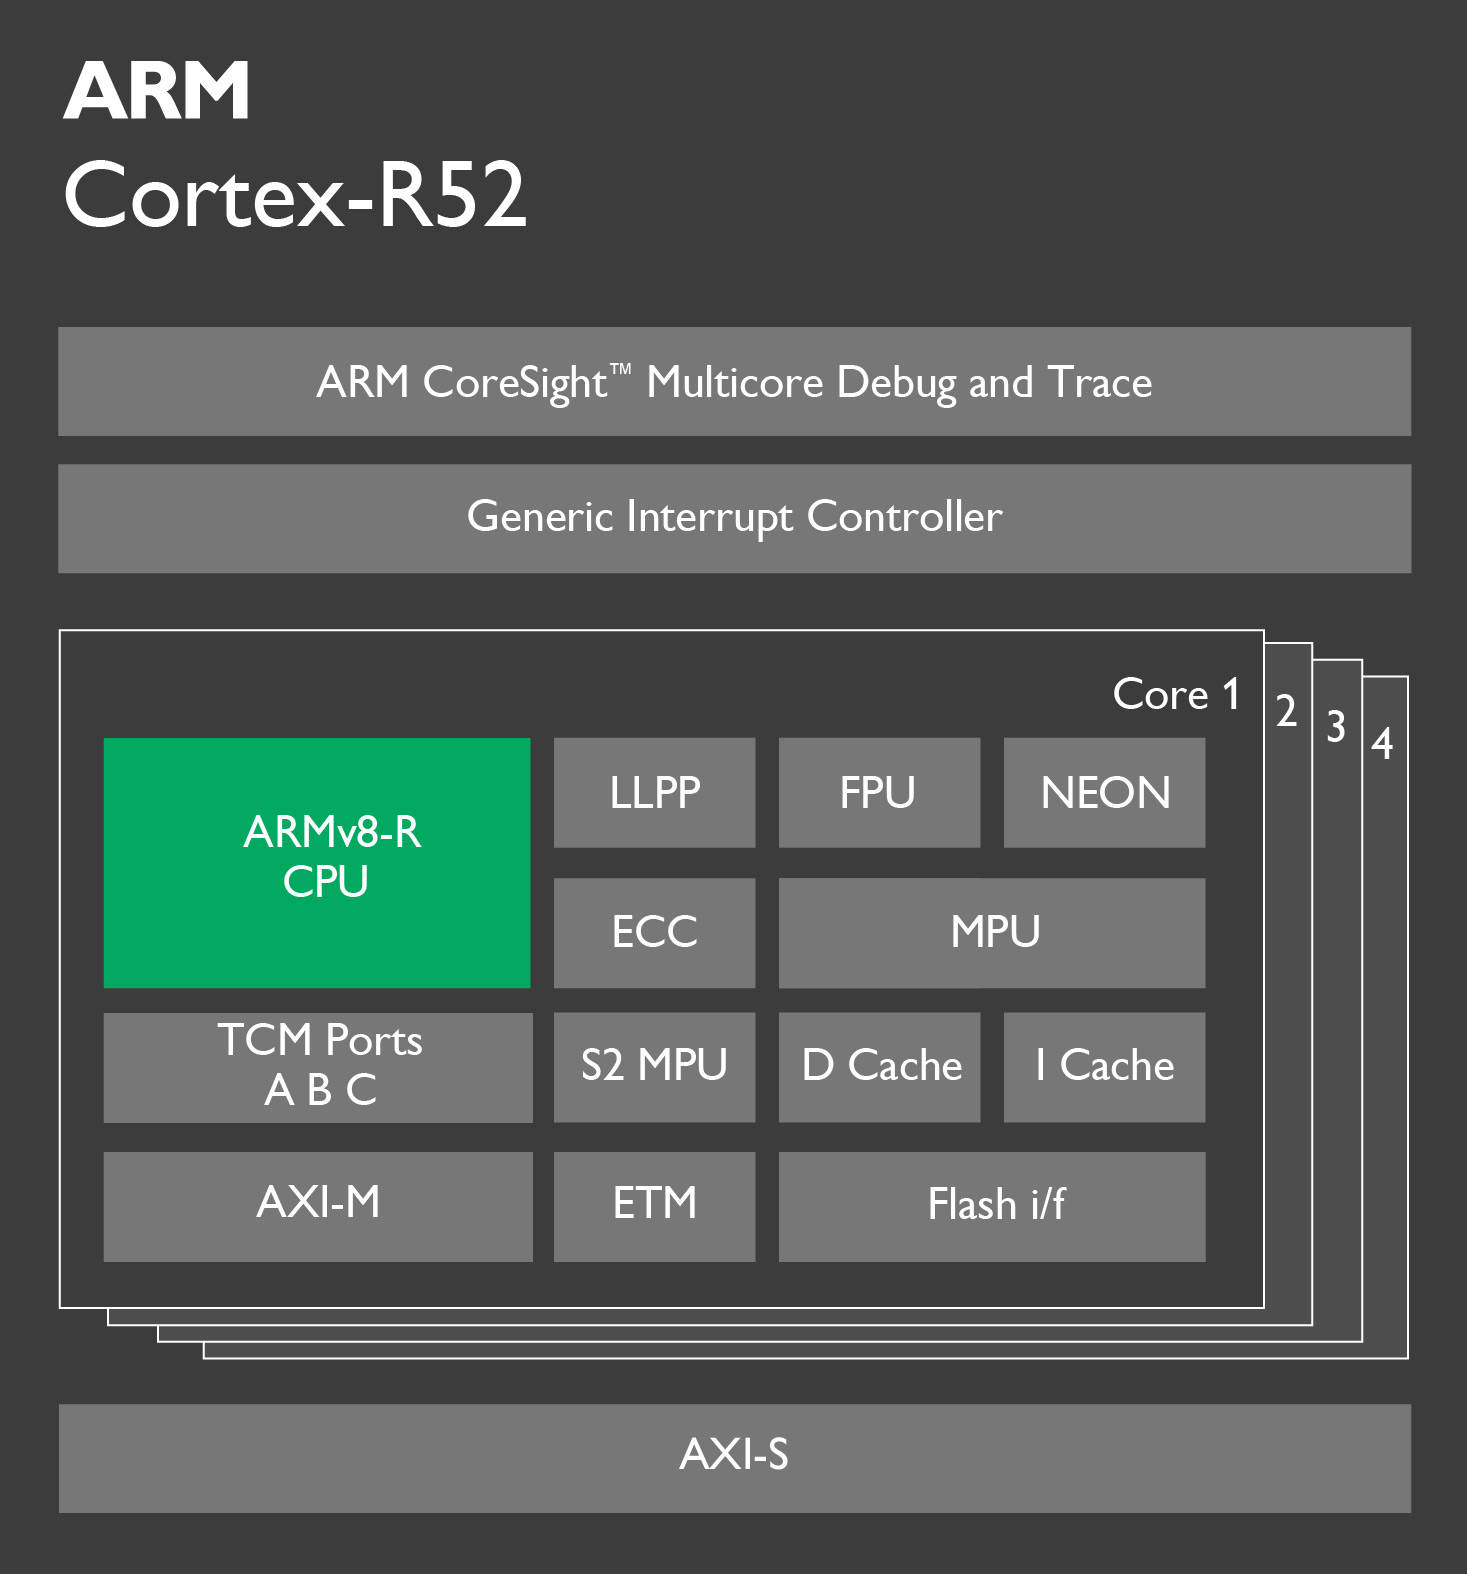 ARM Cortex-R52 explained